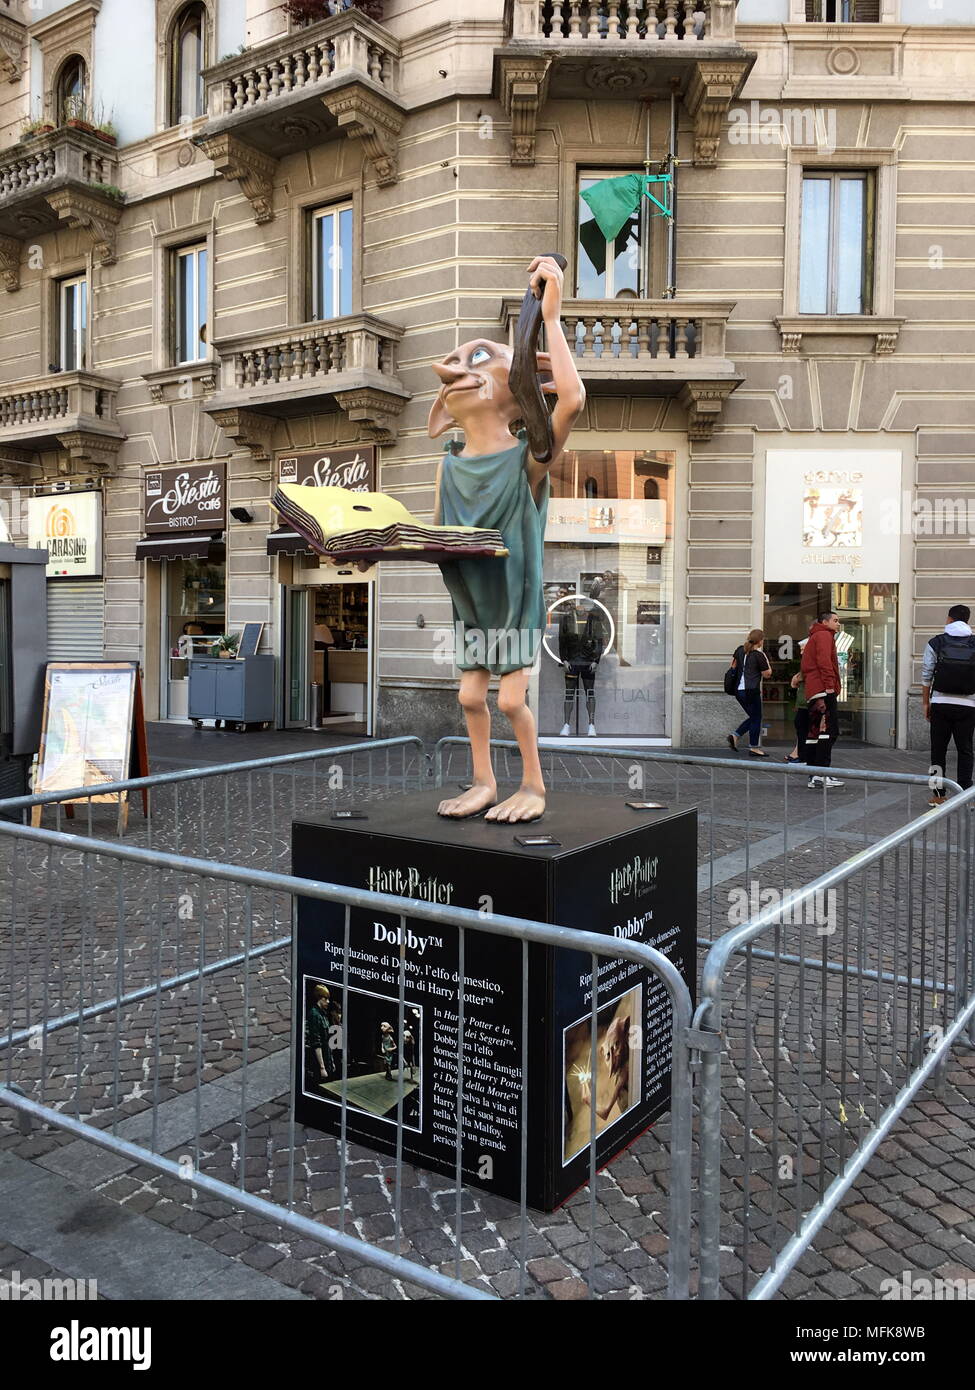 Milano, Dobby elfo domestico del mondo di Harry Potter Grande curiosità in Città per le Statue che annunciano ein Breve l'arrivo della Mostra dedicata Al mondo di Harry Potter. Nella foto Dobby, l'Elfo domestico, esposto da oggi. Stockfoto